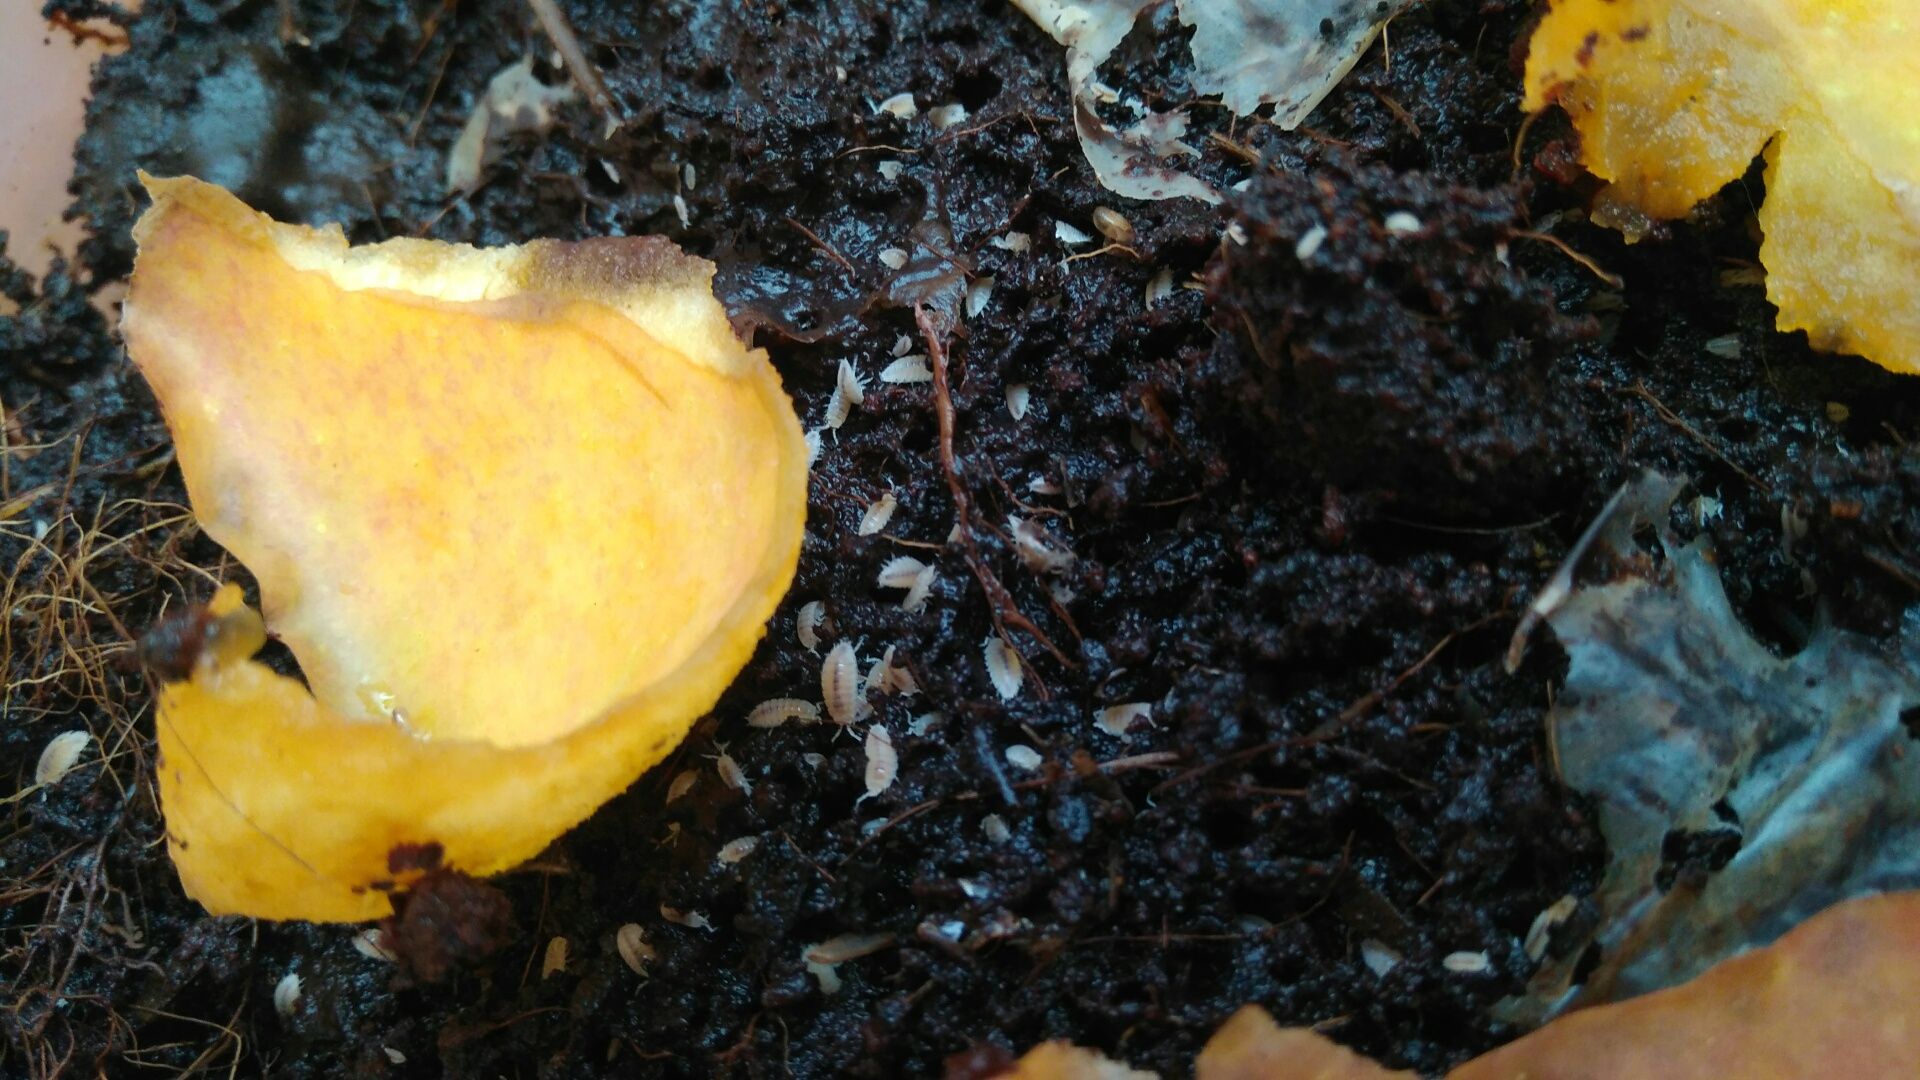 Тропическая мокрица (trichorhina tomentosa), санитар